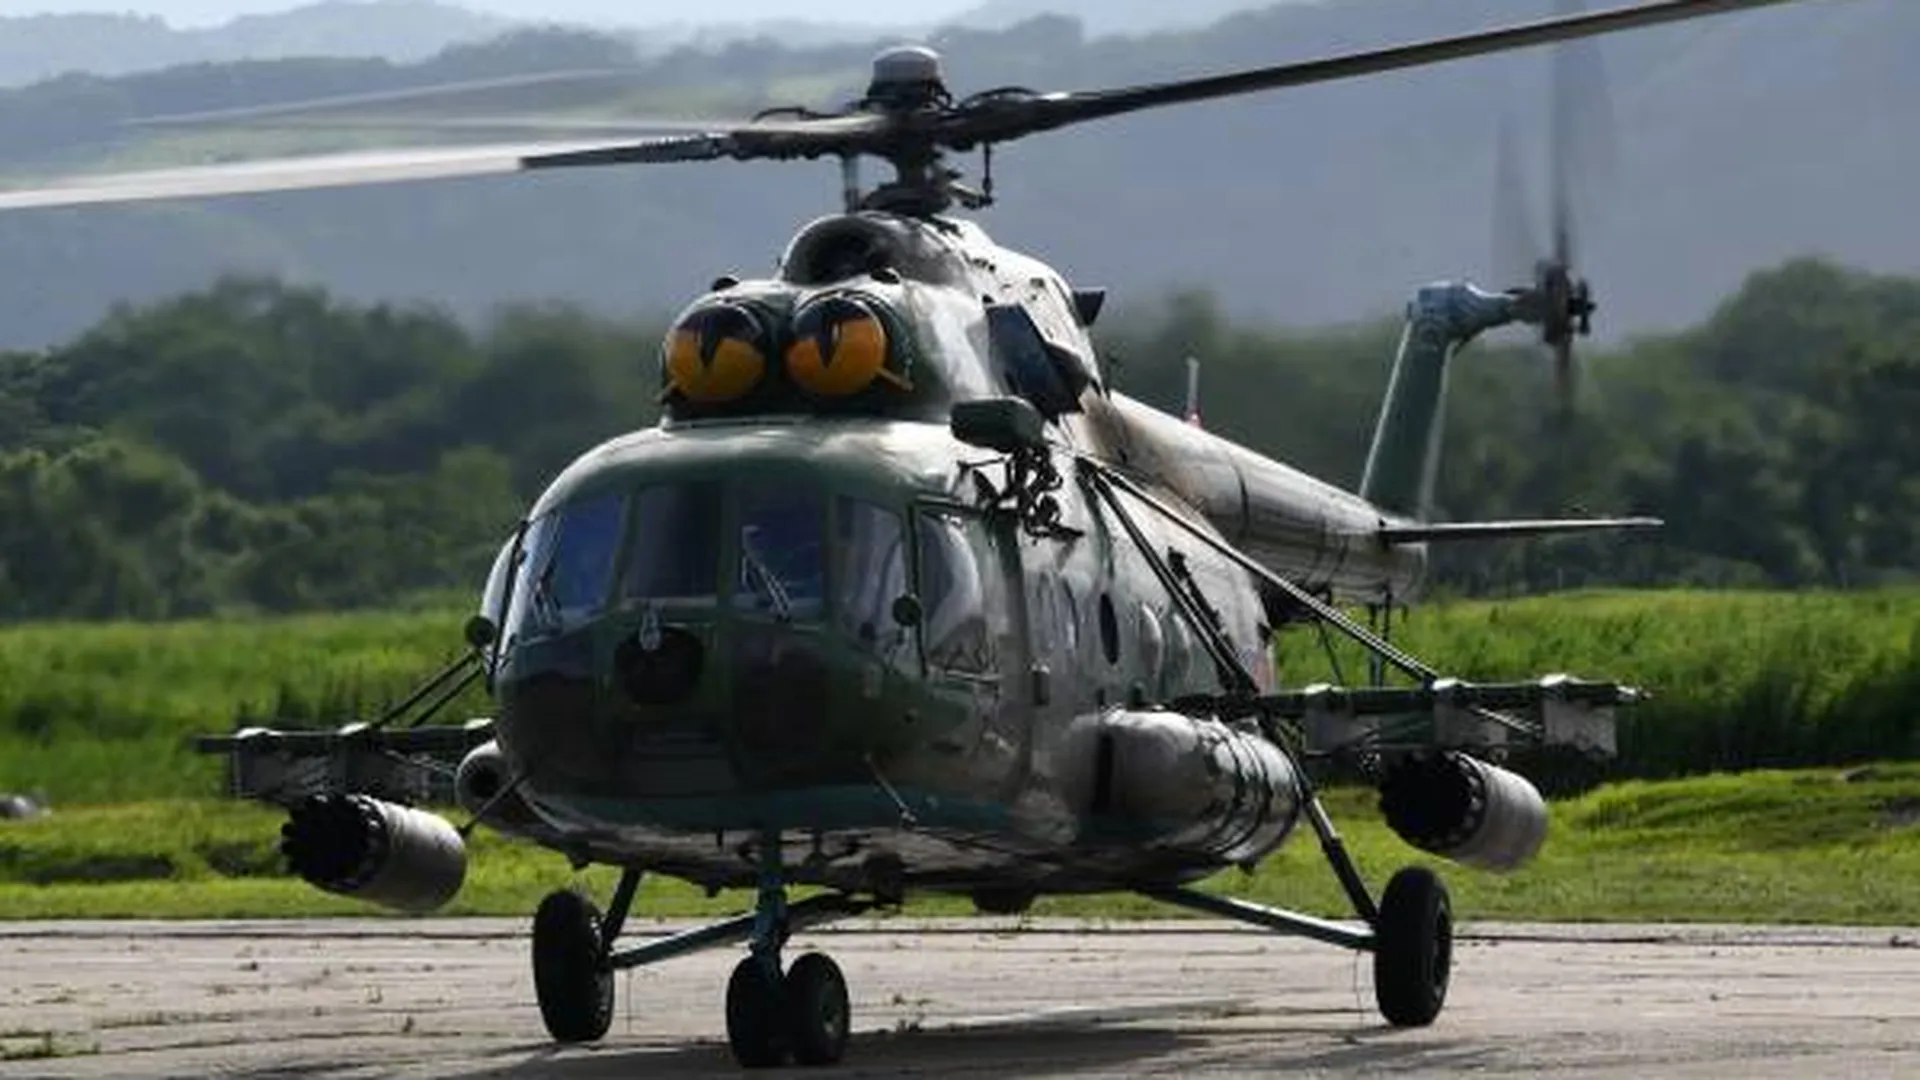 Спасатели вылетели на поиски пропавшего вертолета Robinson